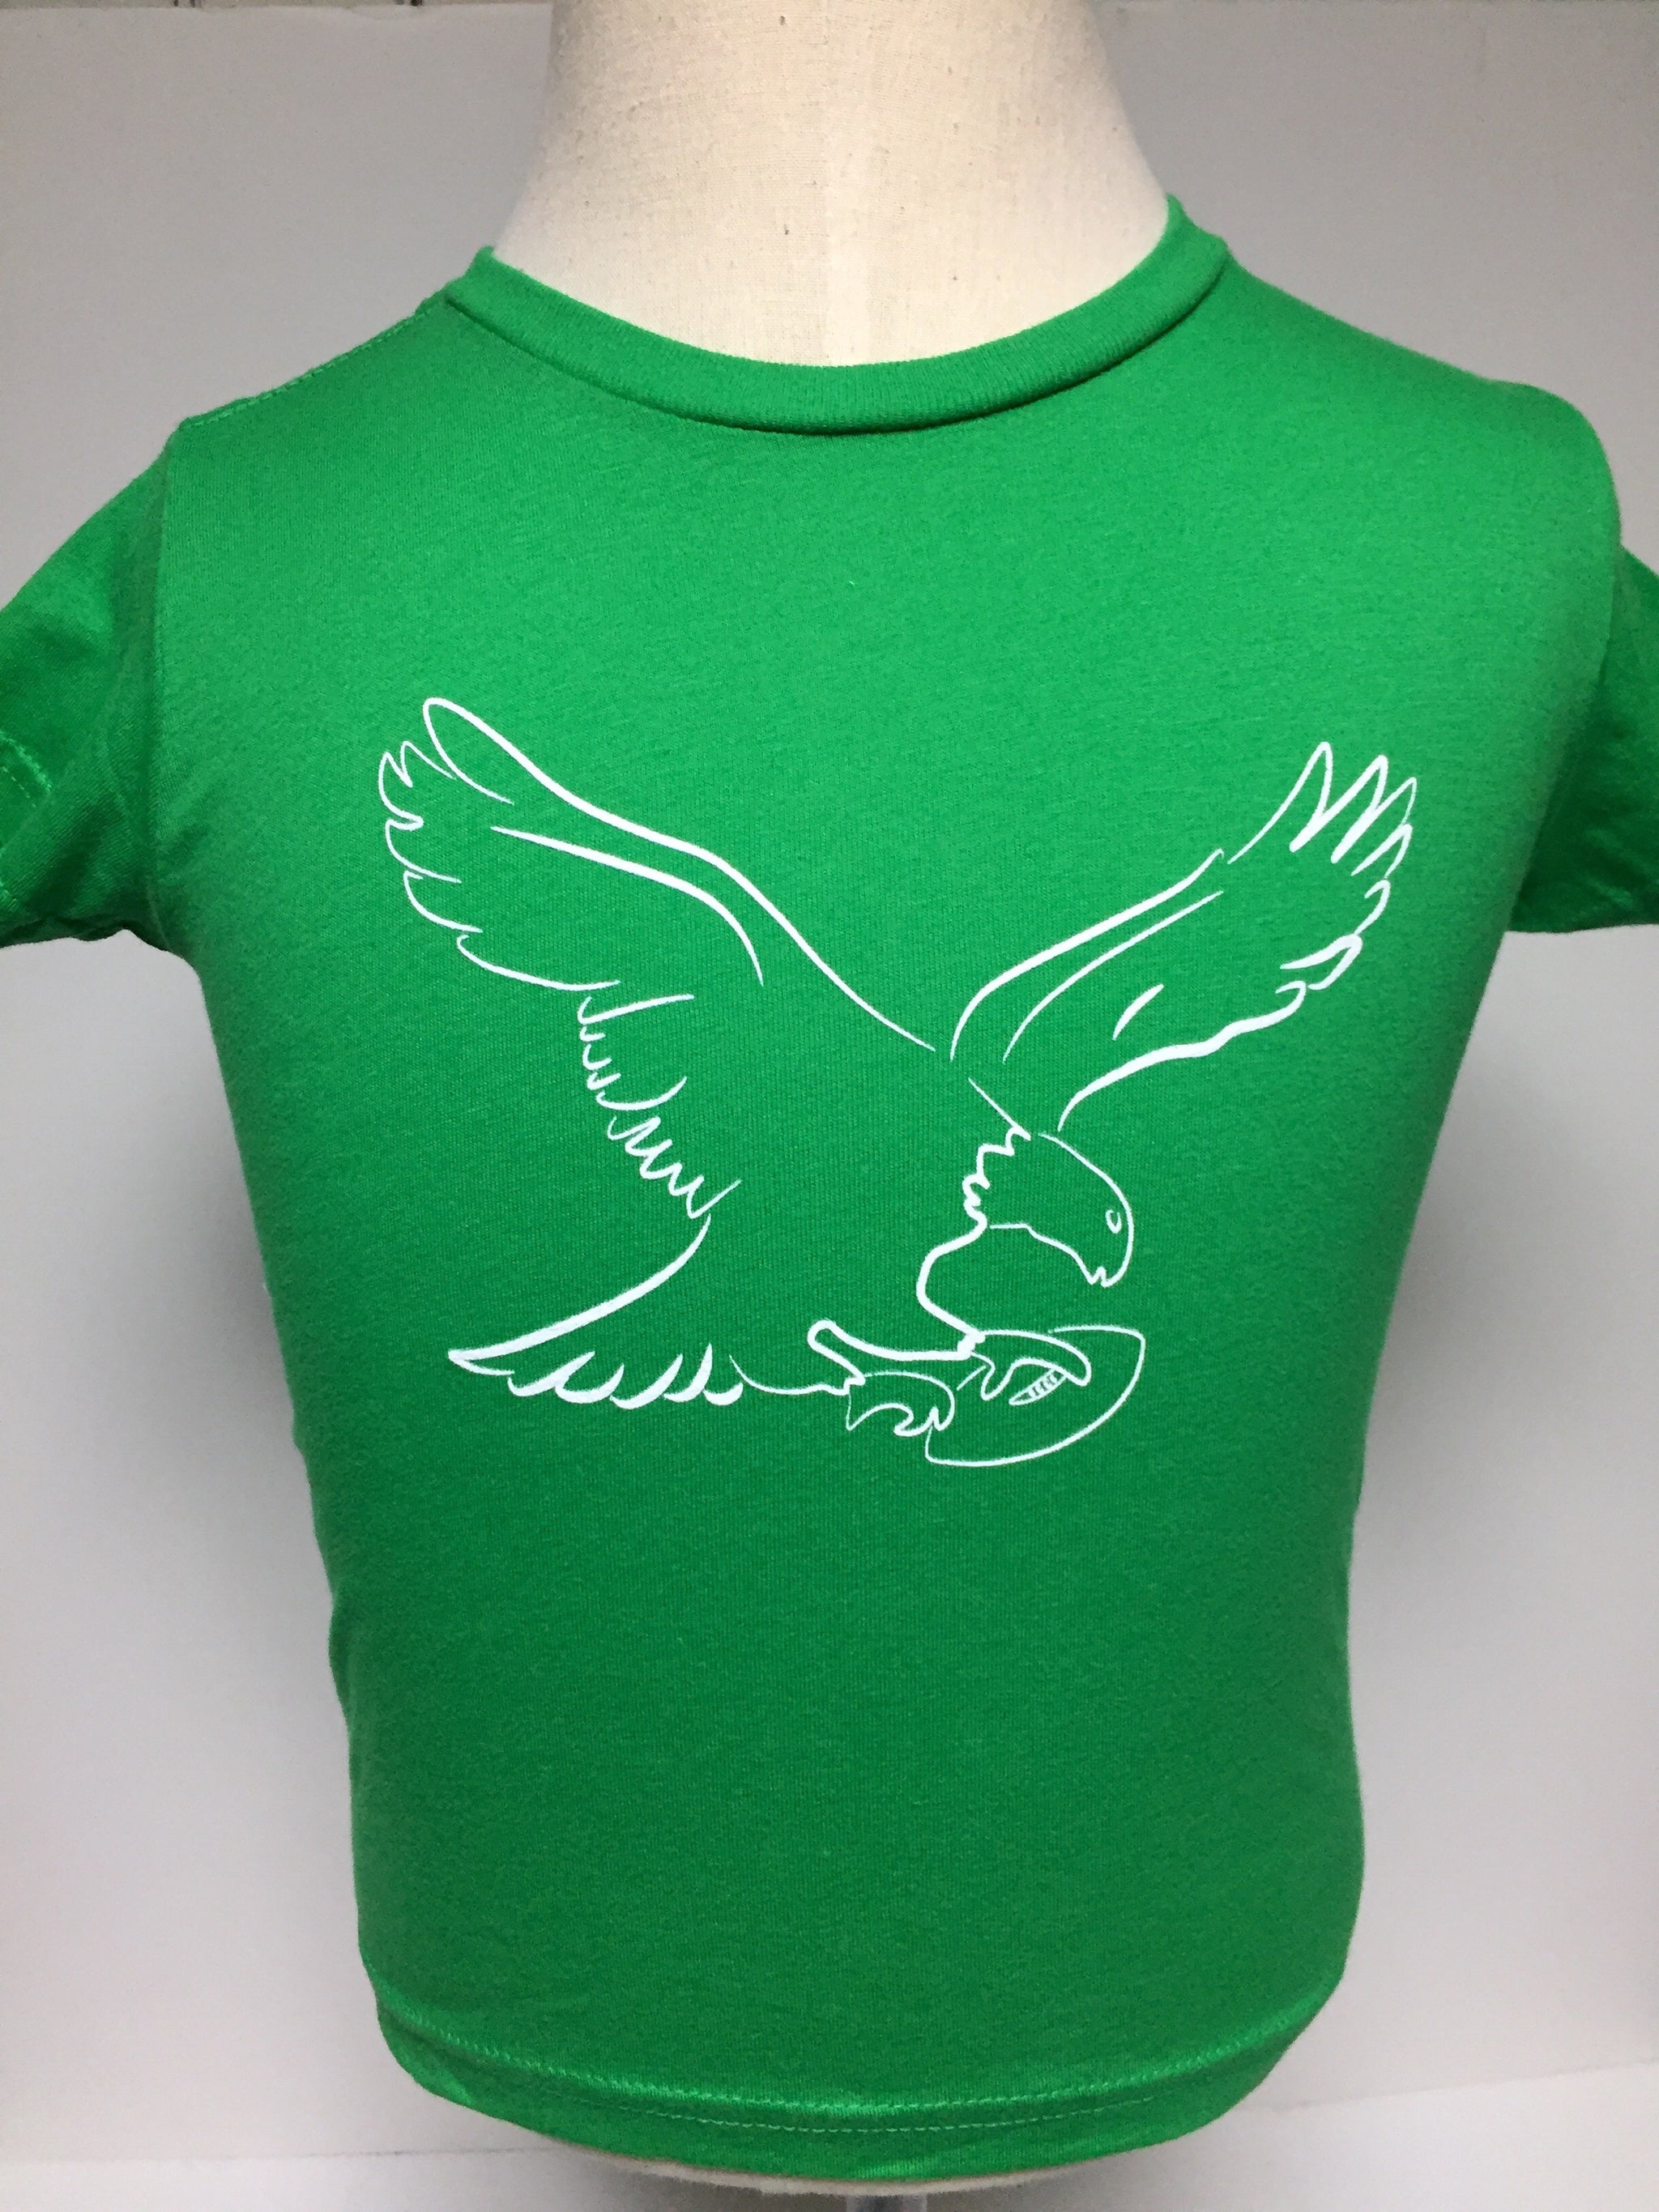 philadelphia eagles girls shirt